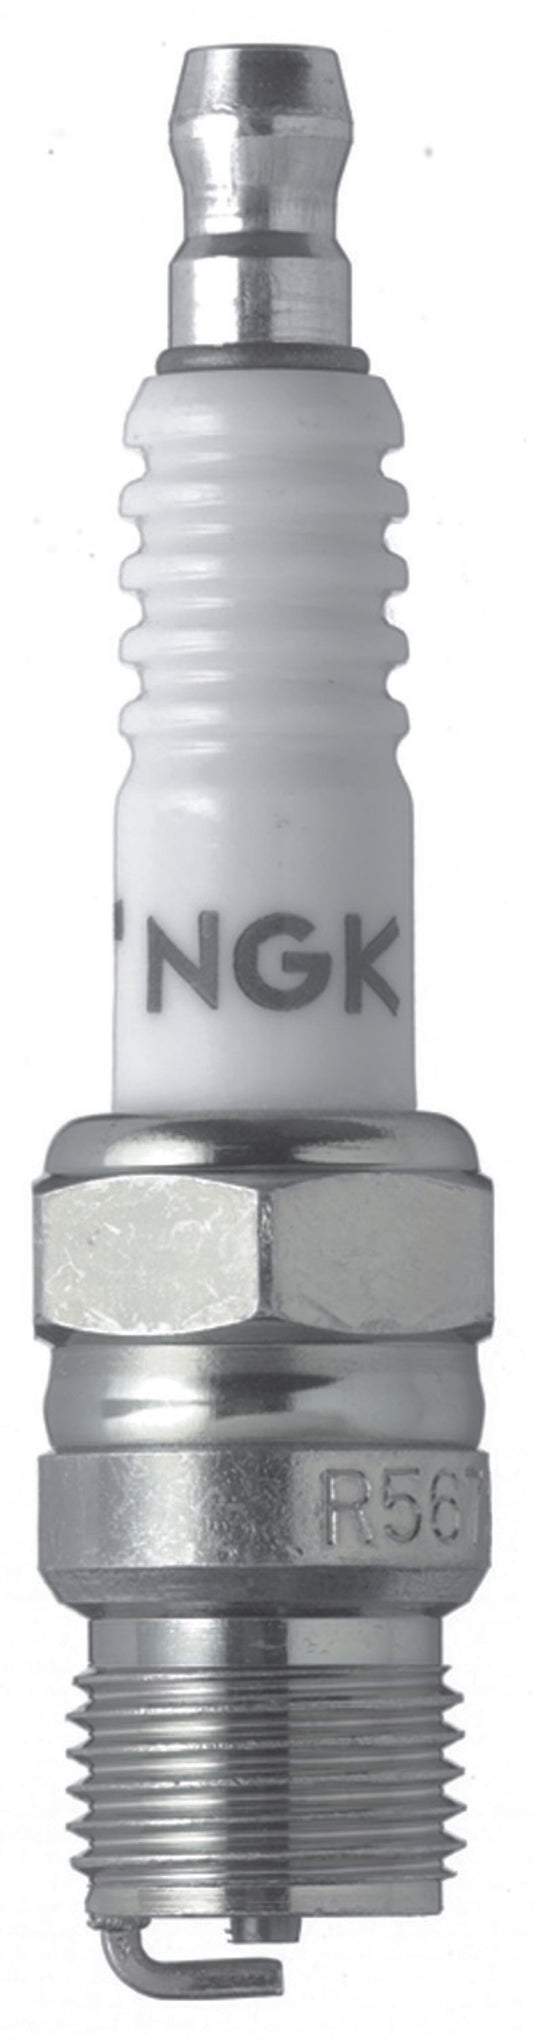 NGK Racing Spark Plug Box of 4 (R5673-7)